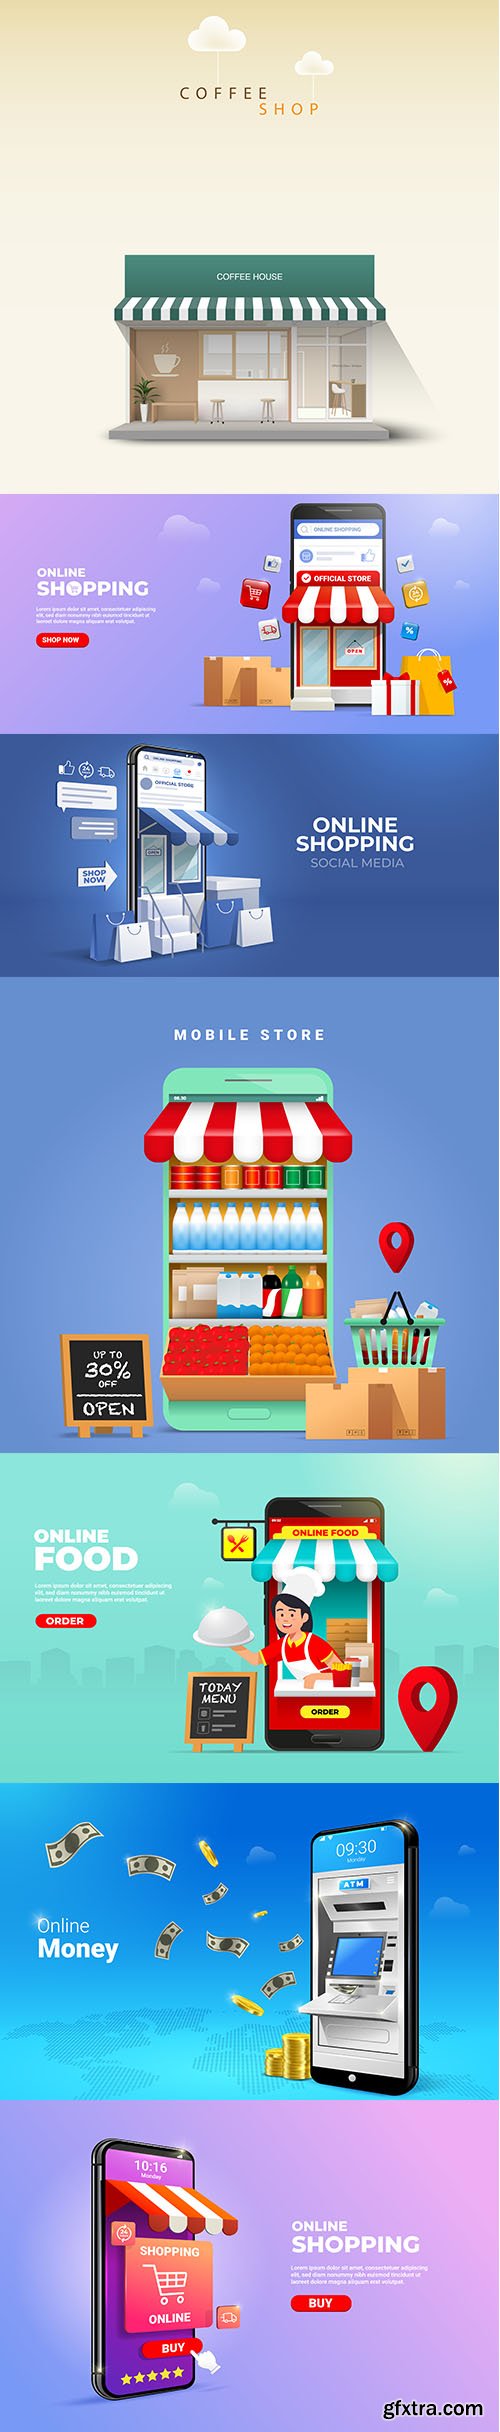 Online shopping on social media mobile applications